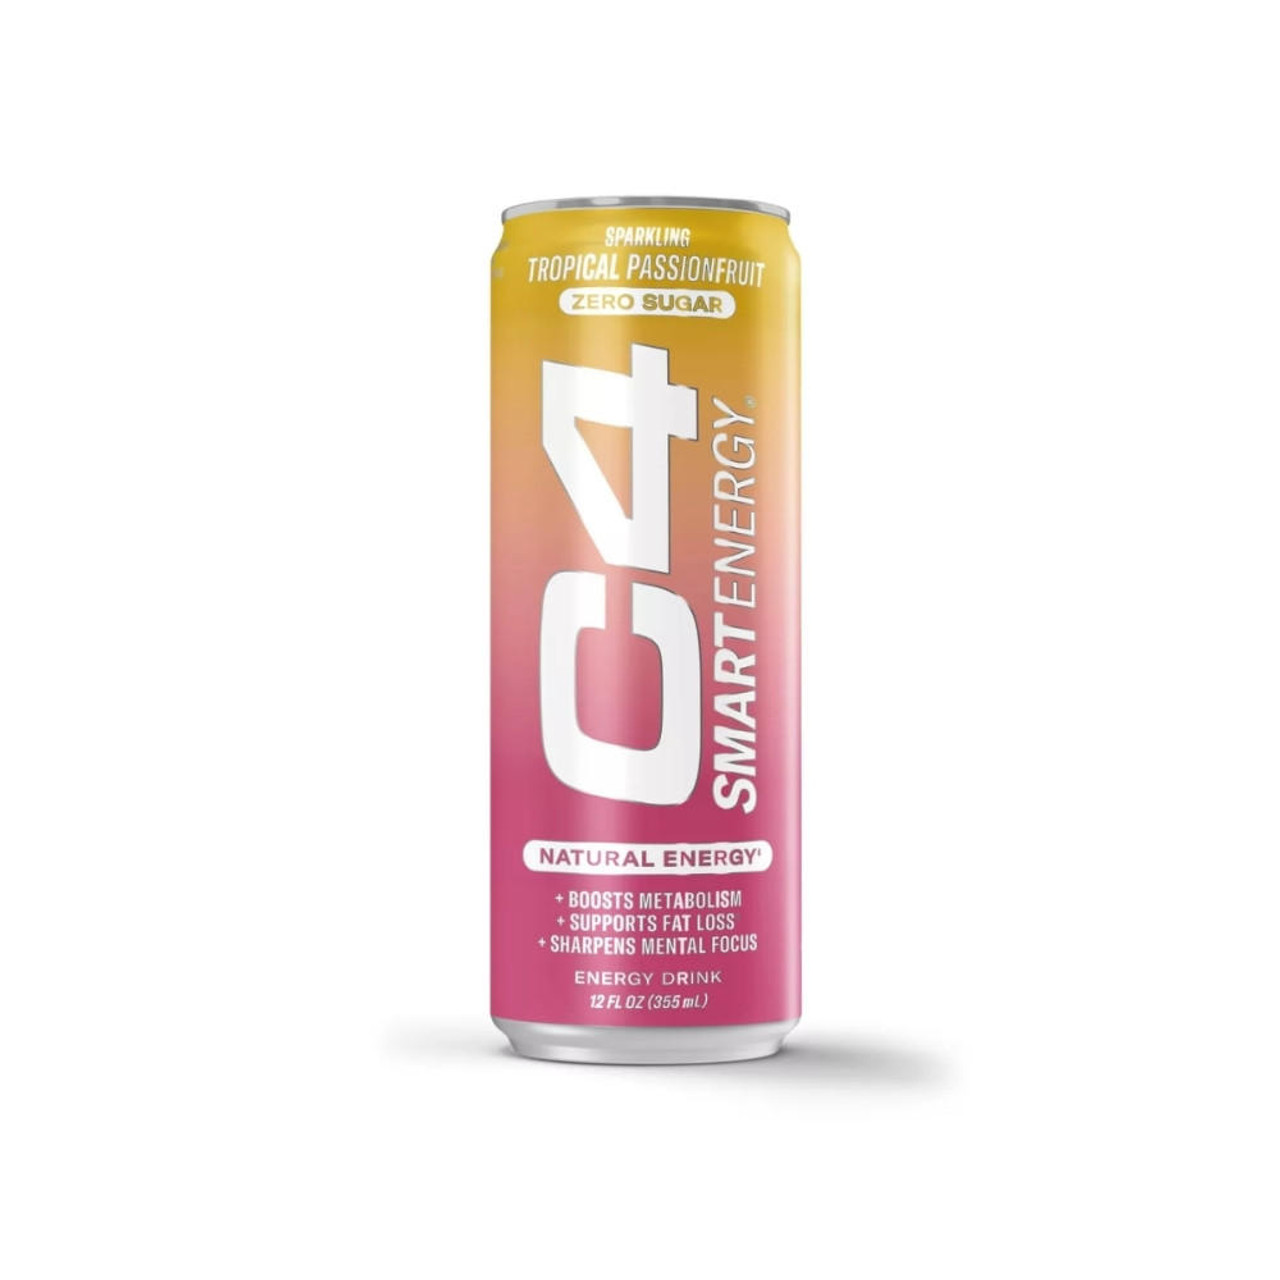 C4 Energy Drink, Zero Sugar, Peach Mango Nectar 16 fl oz, Shop